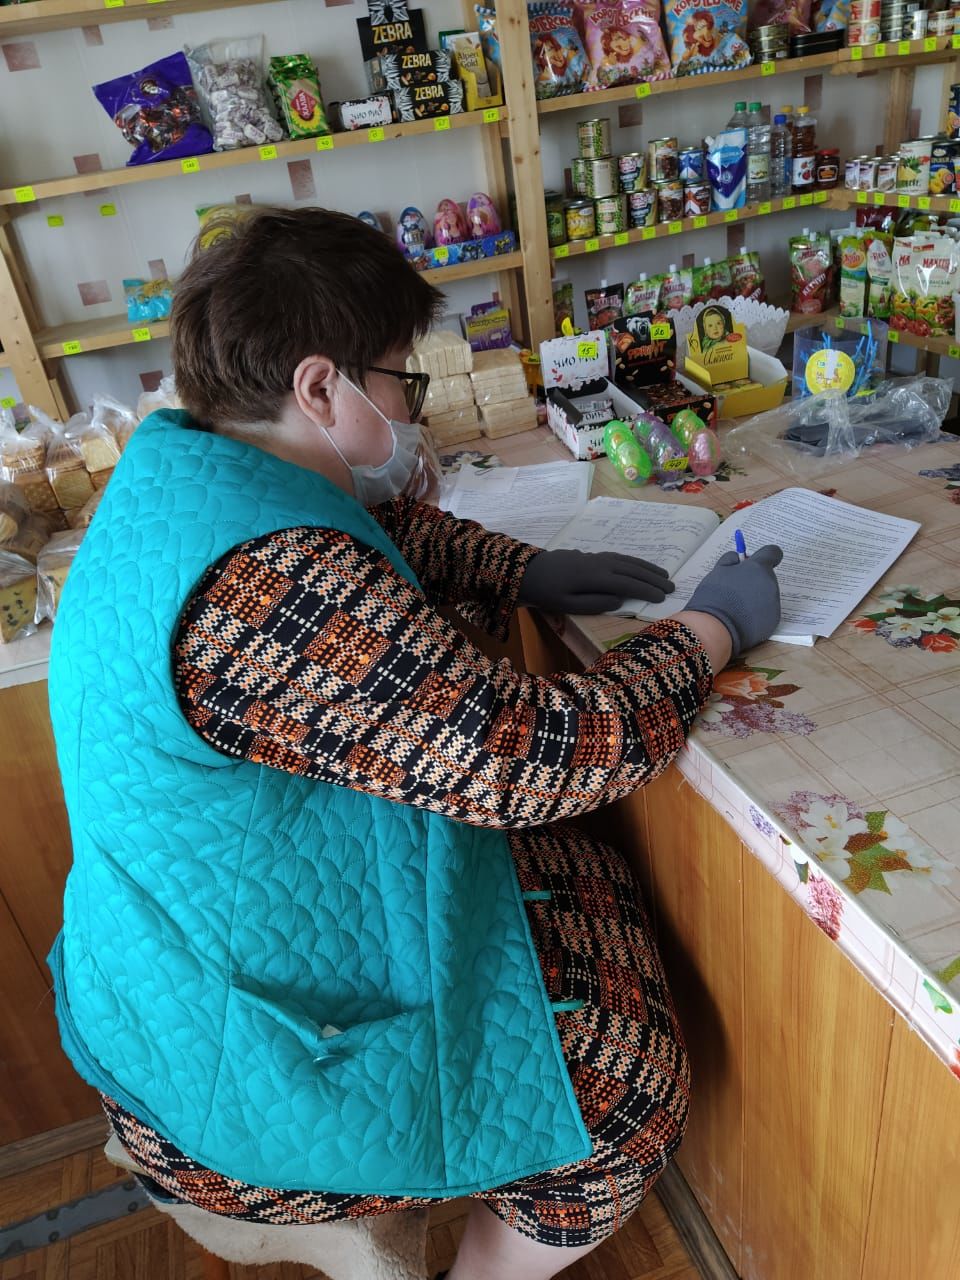 Ирина Миличихина: " Здоровье людей должно быть на первом месте"